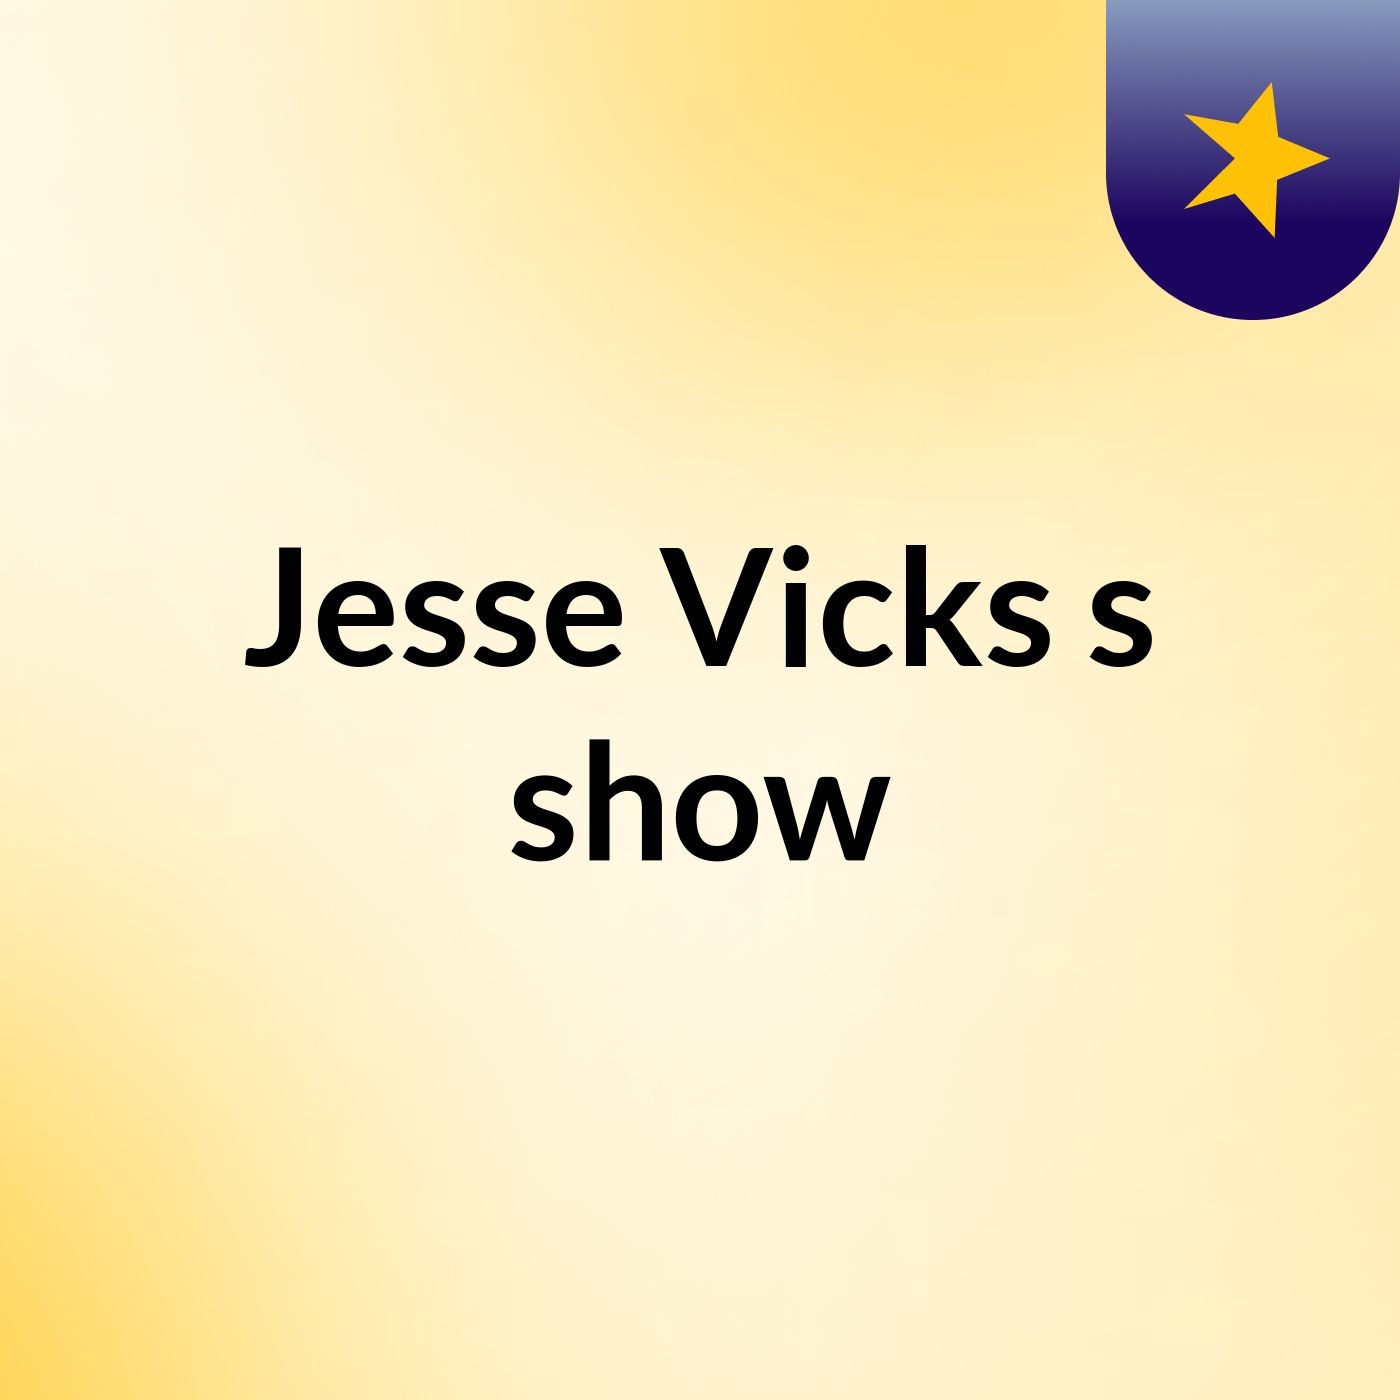 Jesse Vicks's show